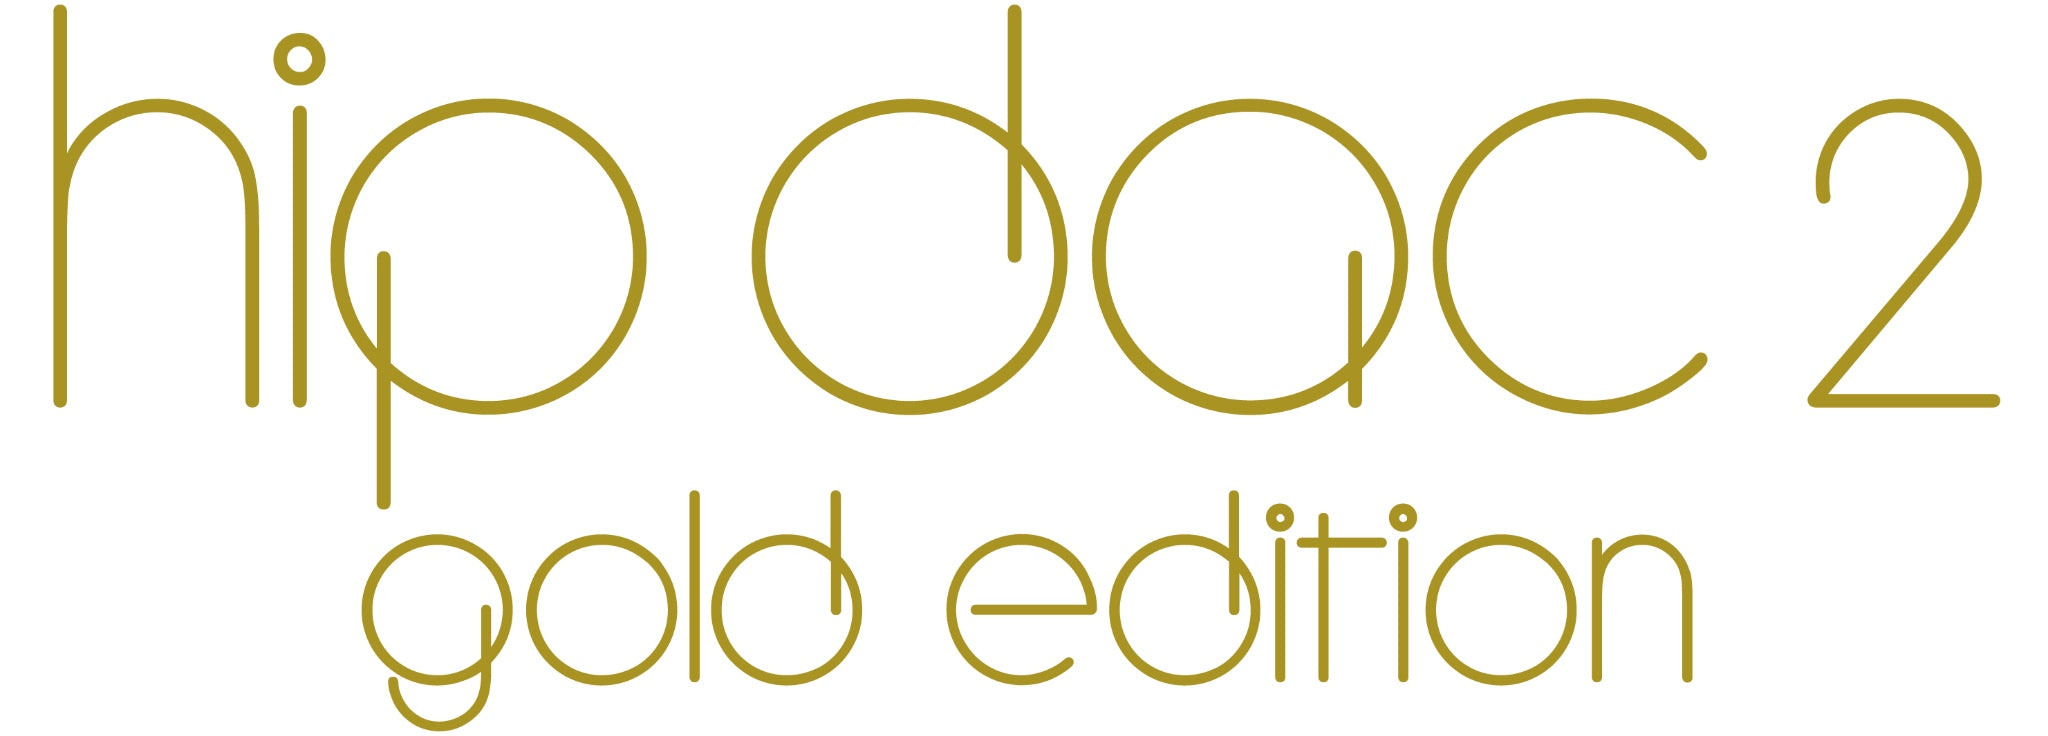 iFi hip-dac 2 Gold Edition official logo